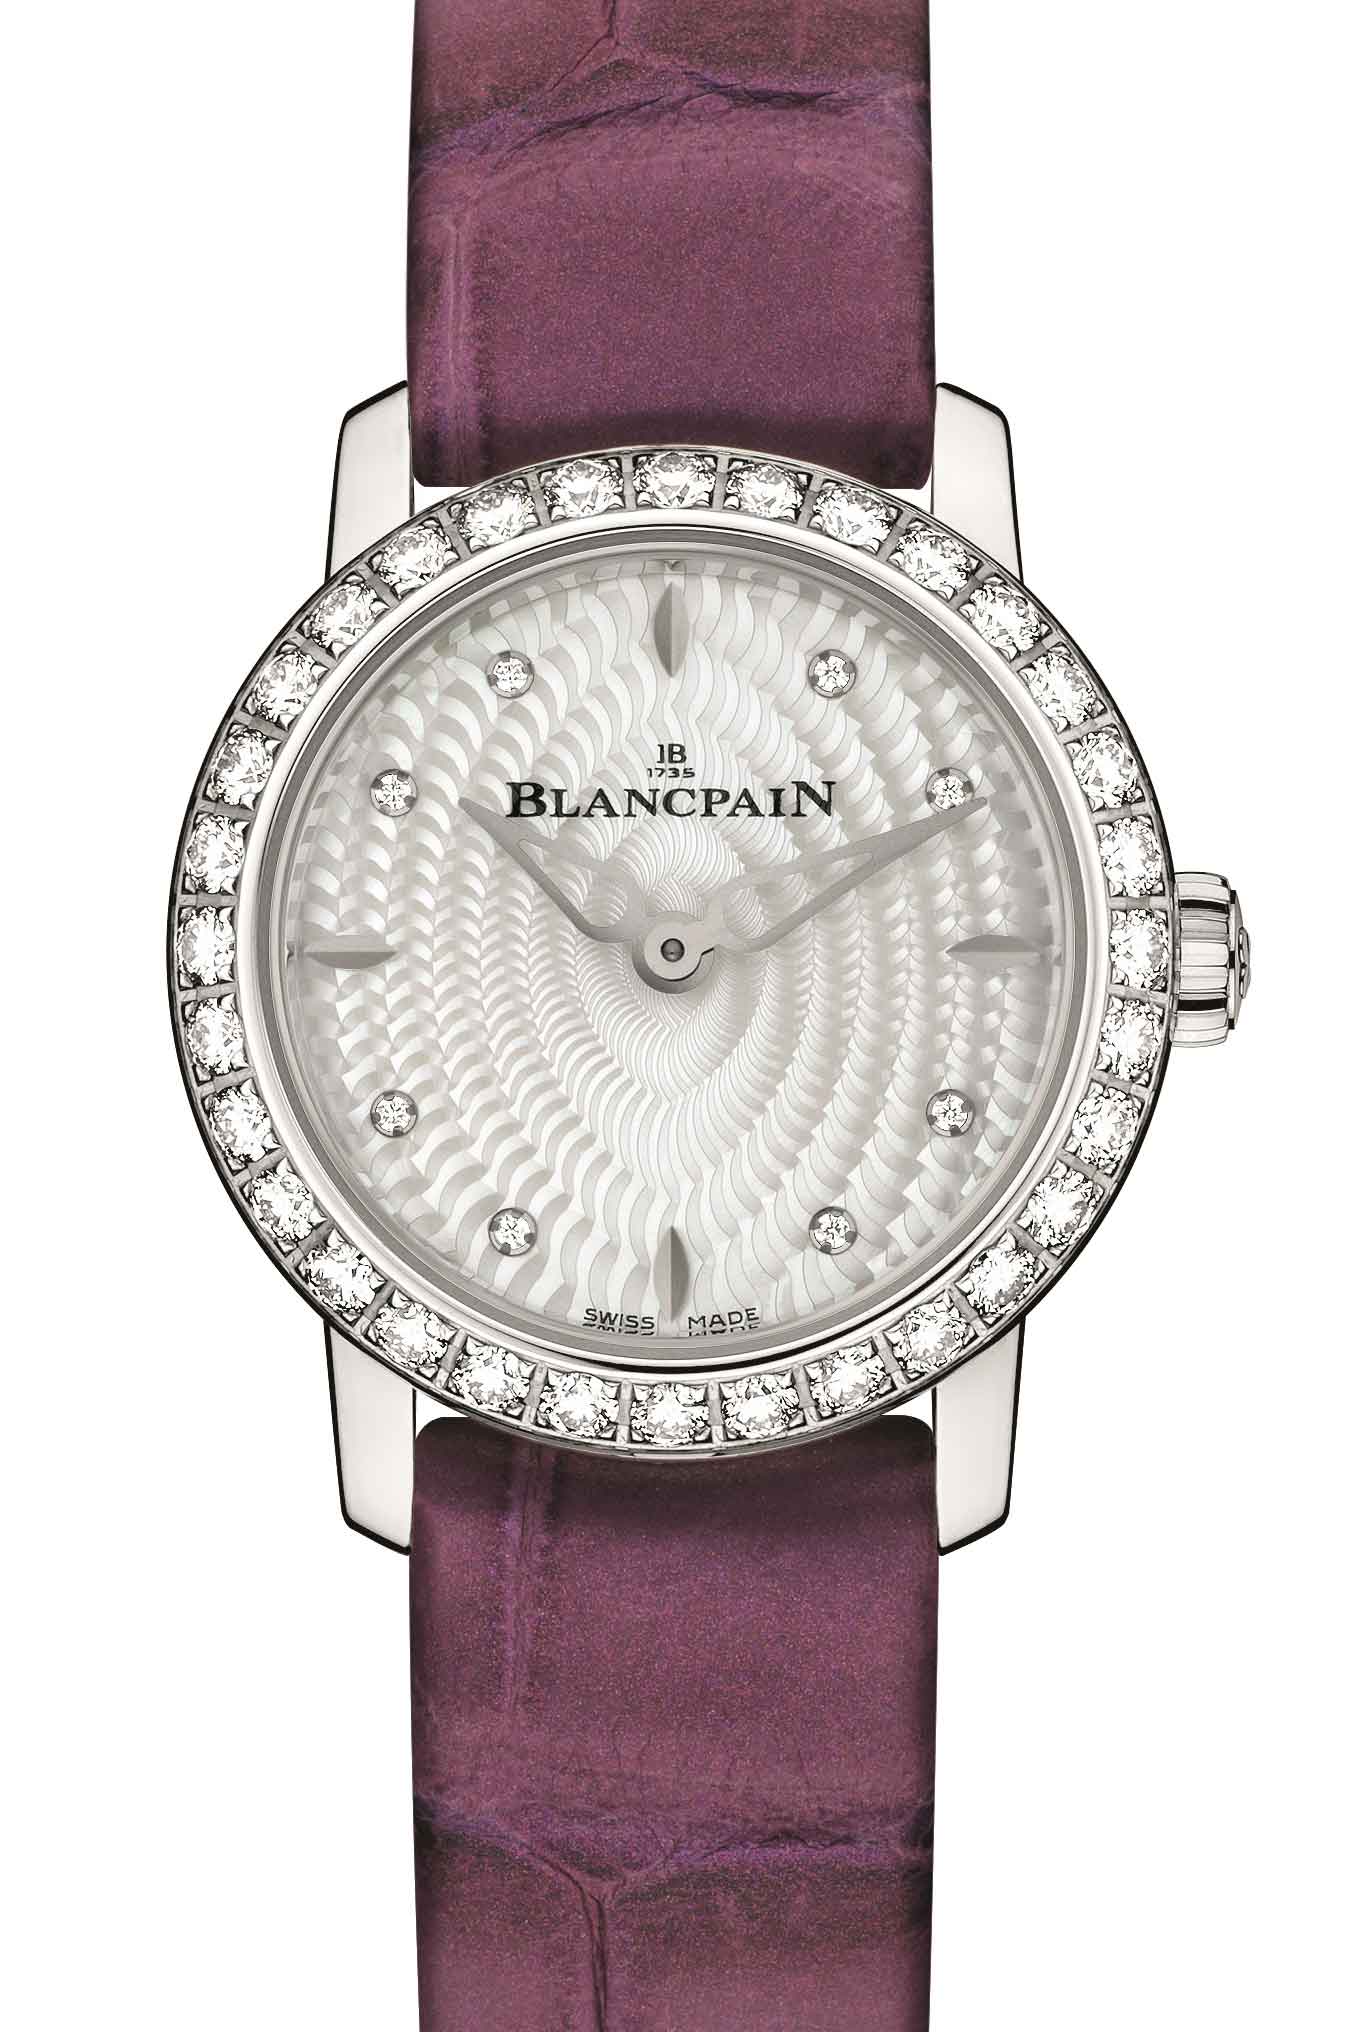 Blancpain贵妇鸟腕表周年纪念版